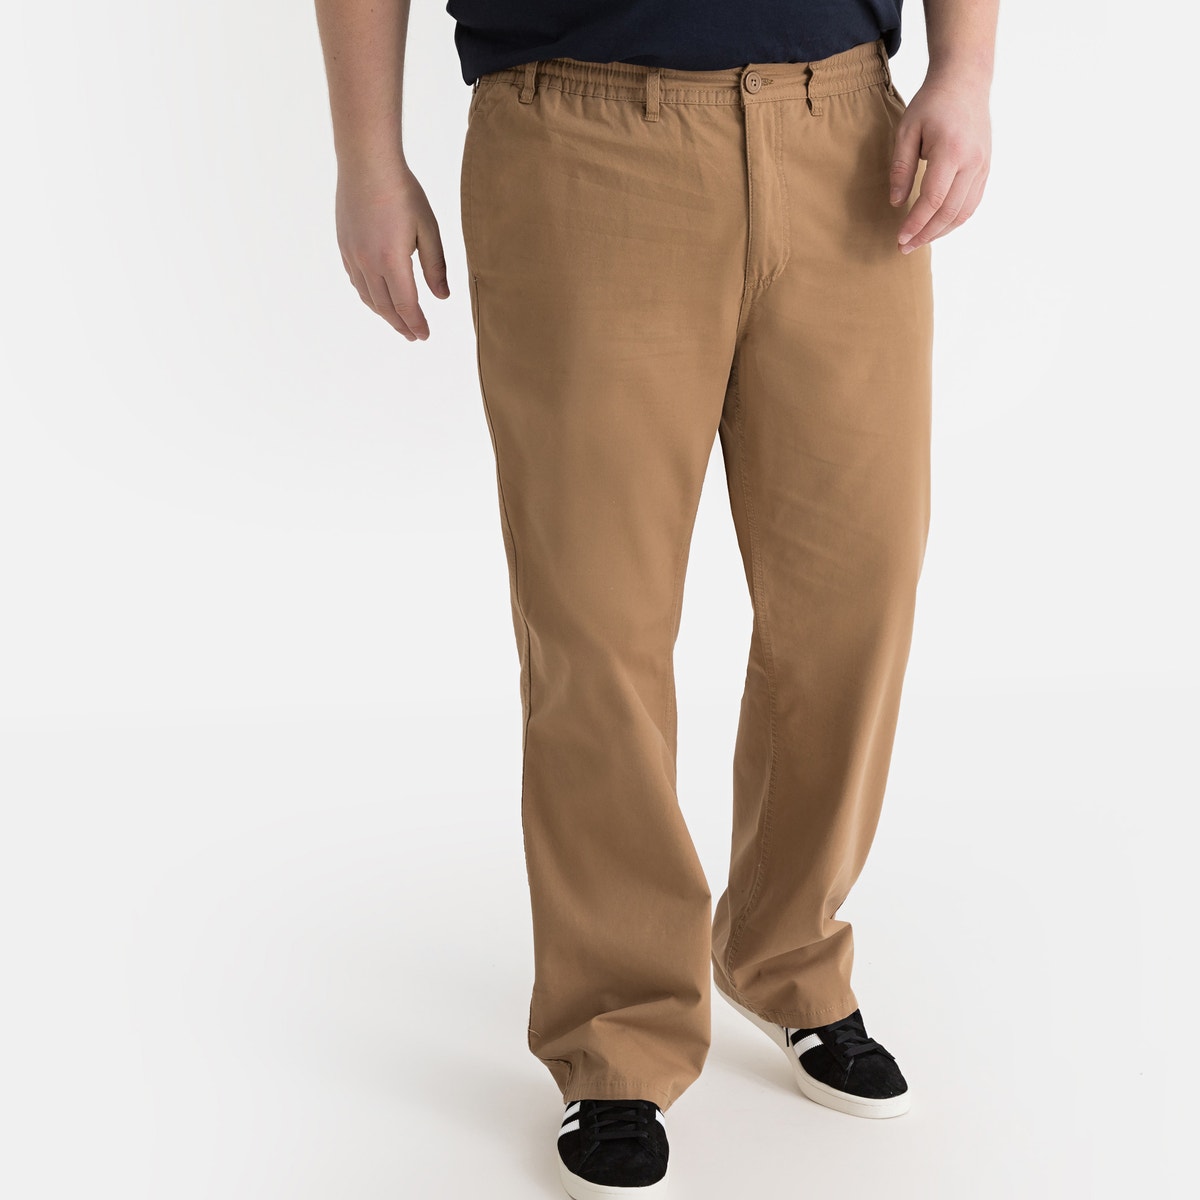 ΑΝΔΡΑΣ | Παντελόνια | Casual Βαμβακερό παντελόνι σε ευθεία γραμμή